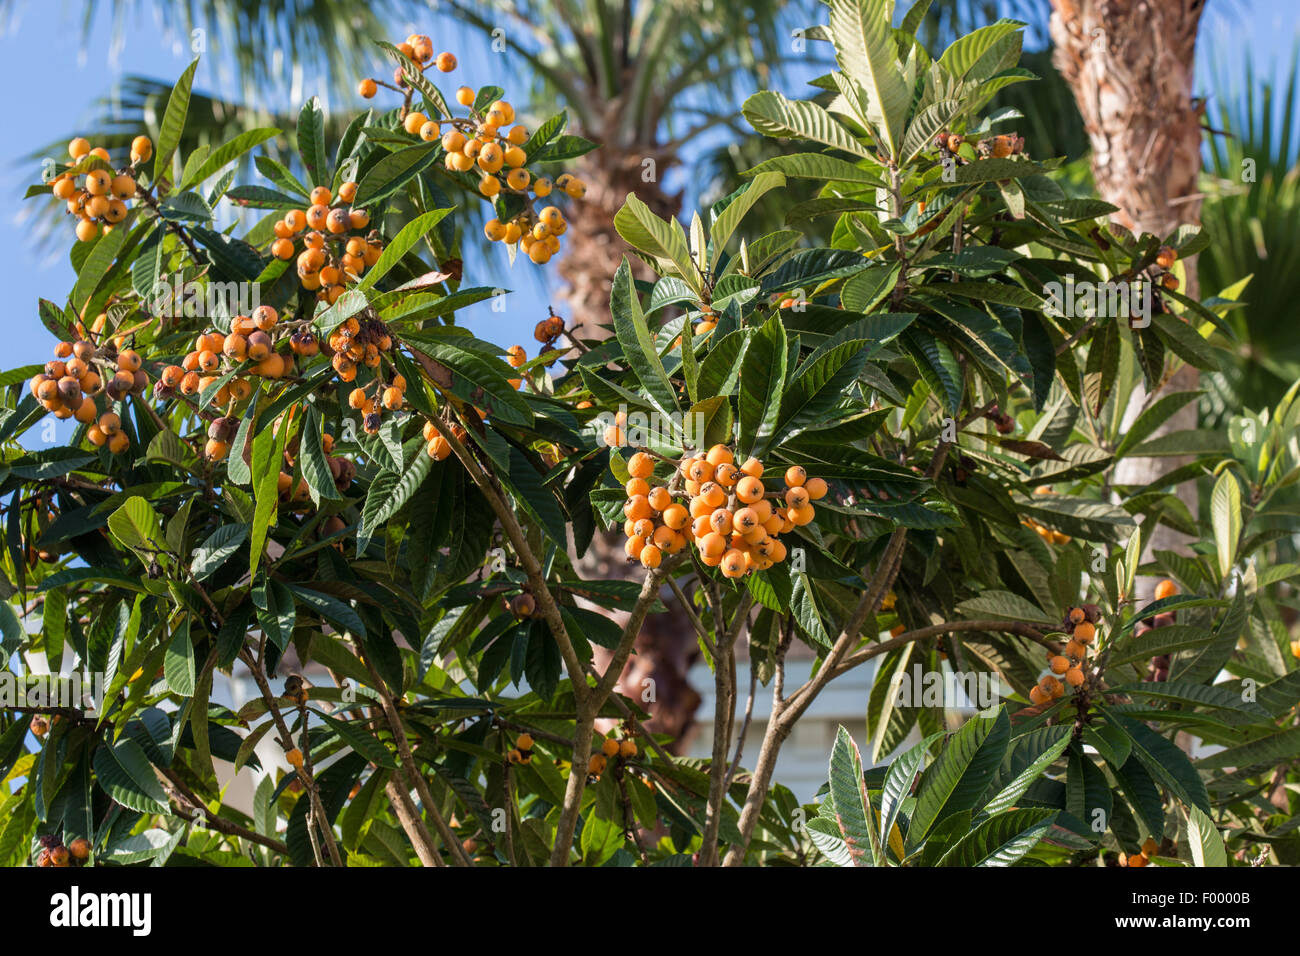 Níspero, ciruelo japonés (Eriobotrya japonica), árbol con muchos frutos, EEUU, Florida Foto de stock